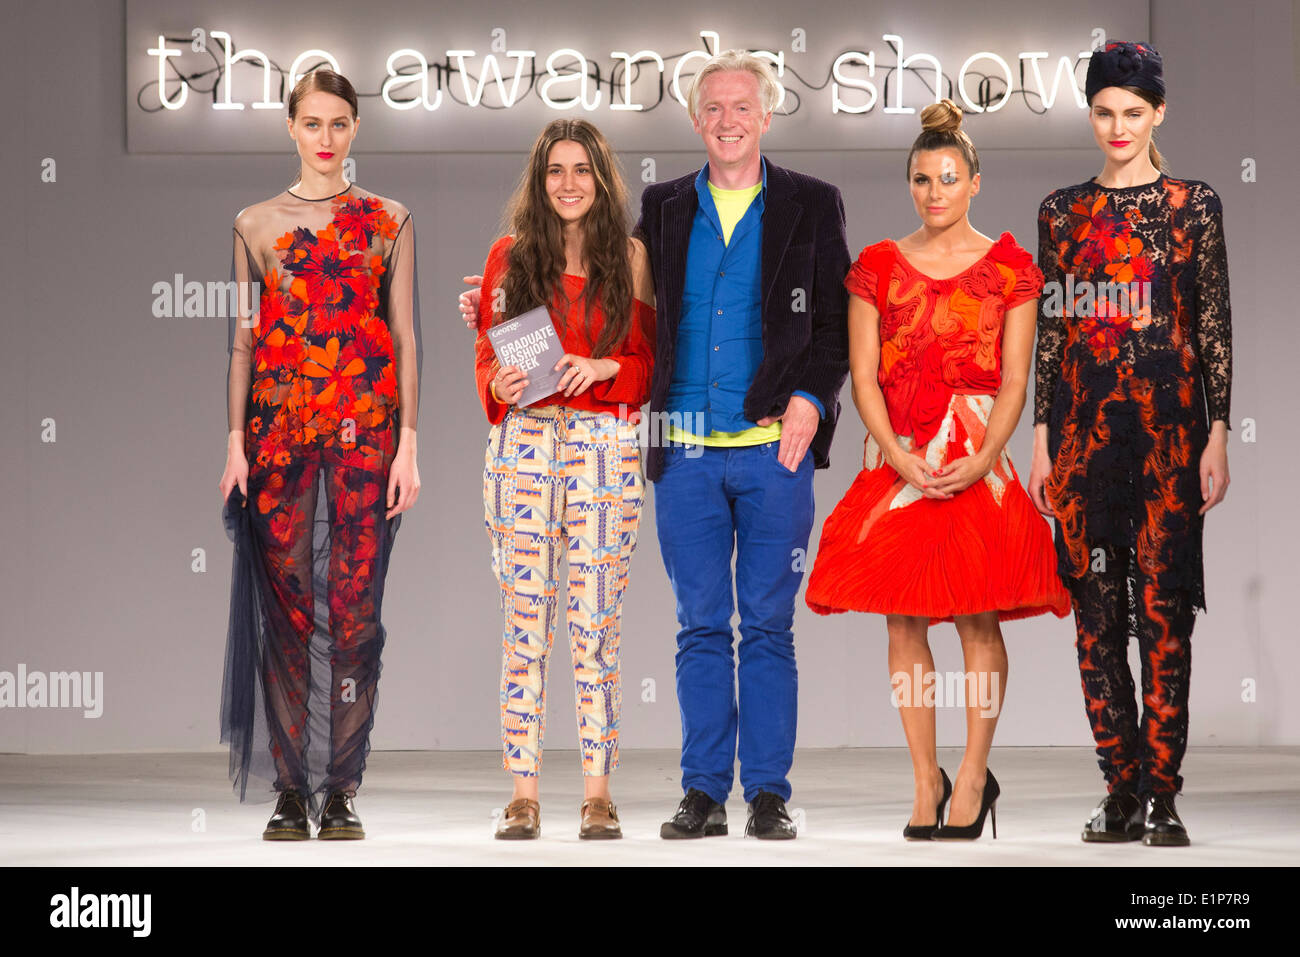 Grace Weller erhält die Womenswear-Auszeichnung von Philip Treacy, mit Zoe Hardman, Graduate Fashion Week 2014 Awards Show. Stockfoto